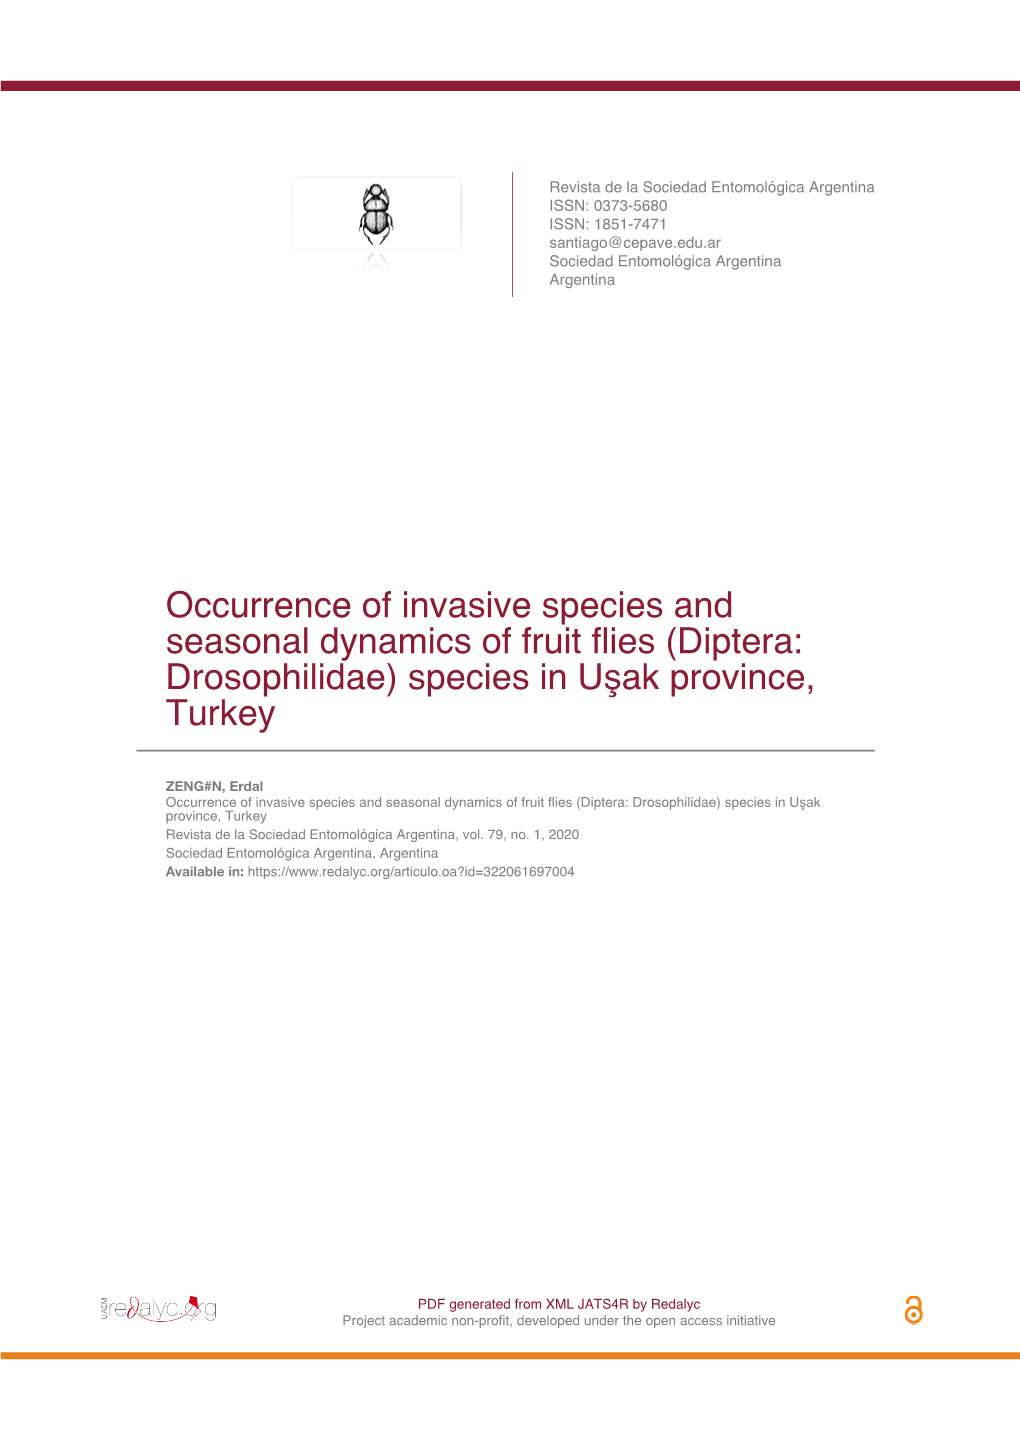 Diptera: Drosophilidae) Species in Uşak Province, Turkey